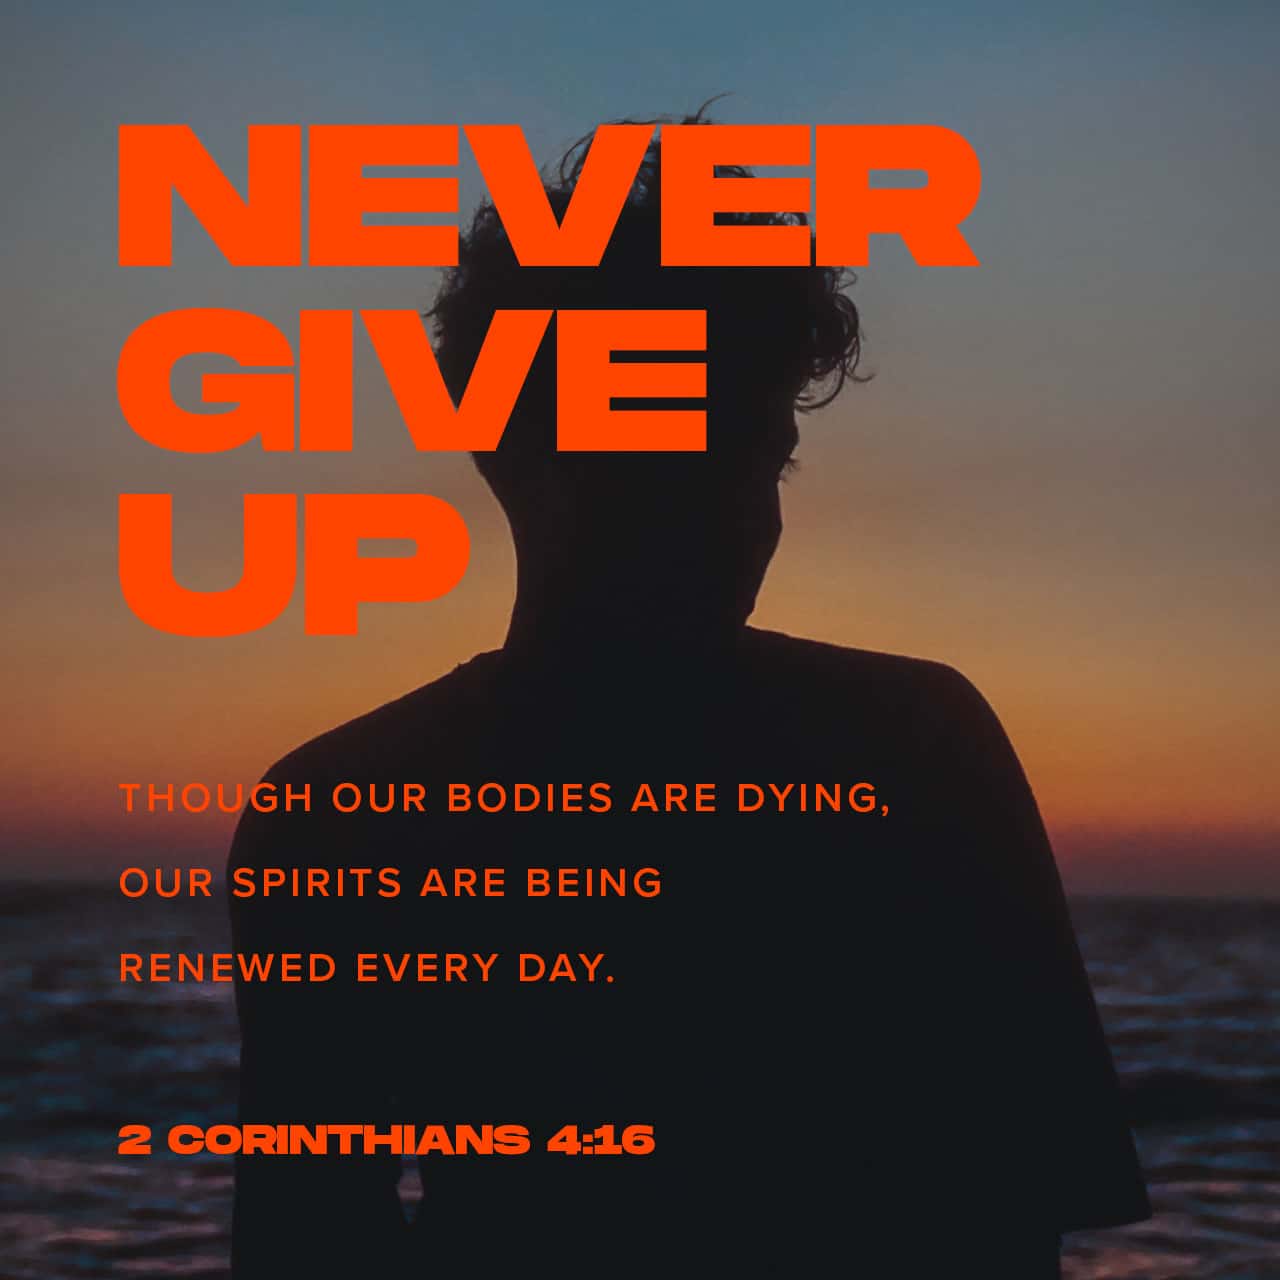 ნუ დაკარგავ გულს - ერთგულება 2 კორინთელთა 4:16-18